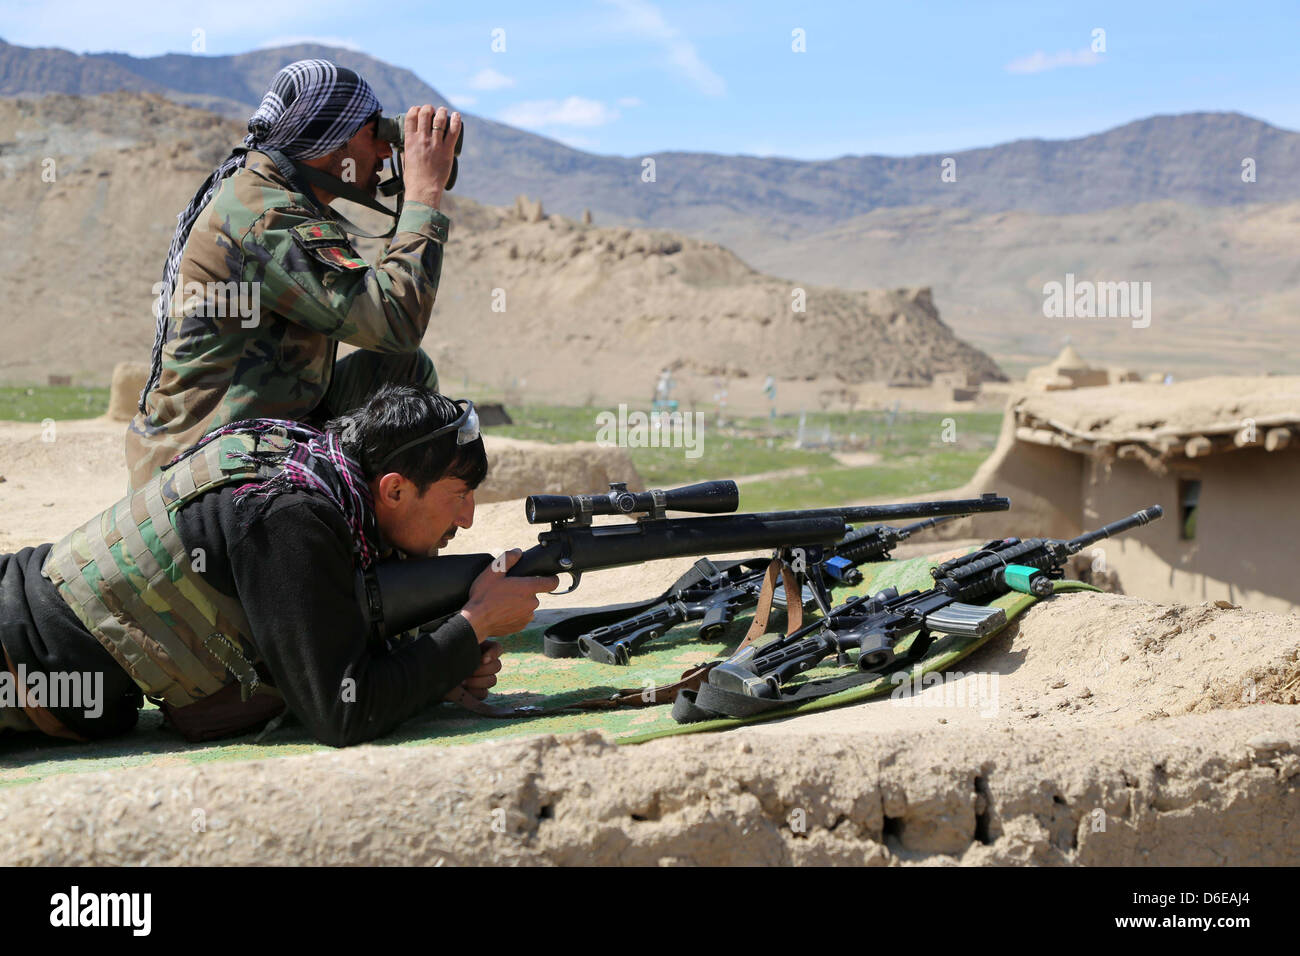 Un esercito nazionale afghano sniper team con le 6 operazioni speciali Kandak fornisce la sicurezza durante un'operazione di compensazione 25 marzo 2013 nell'Baraki Barak distretto, provincia di Logar, Afghanistan. Foto Stock